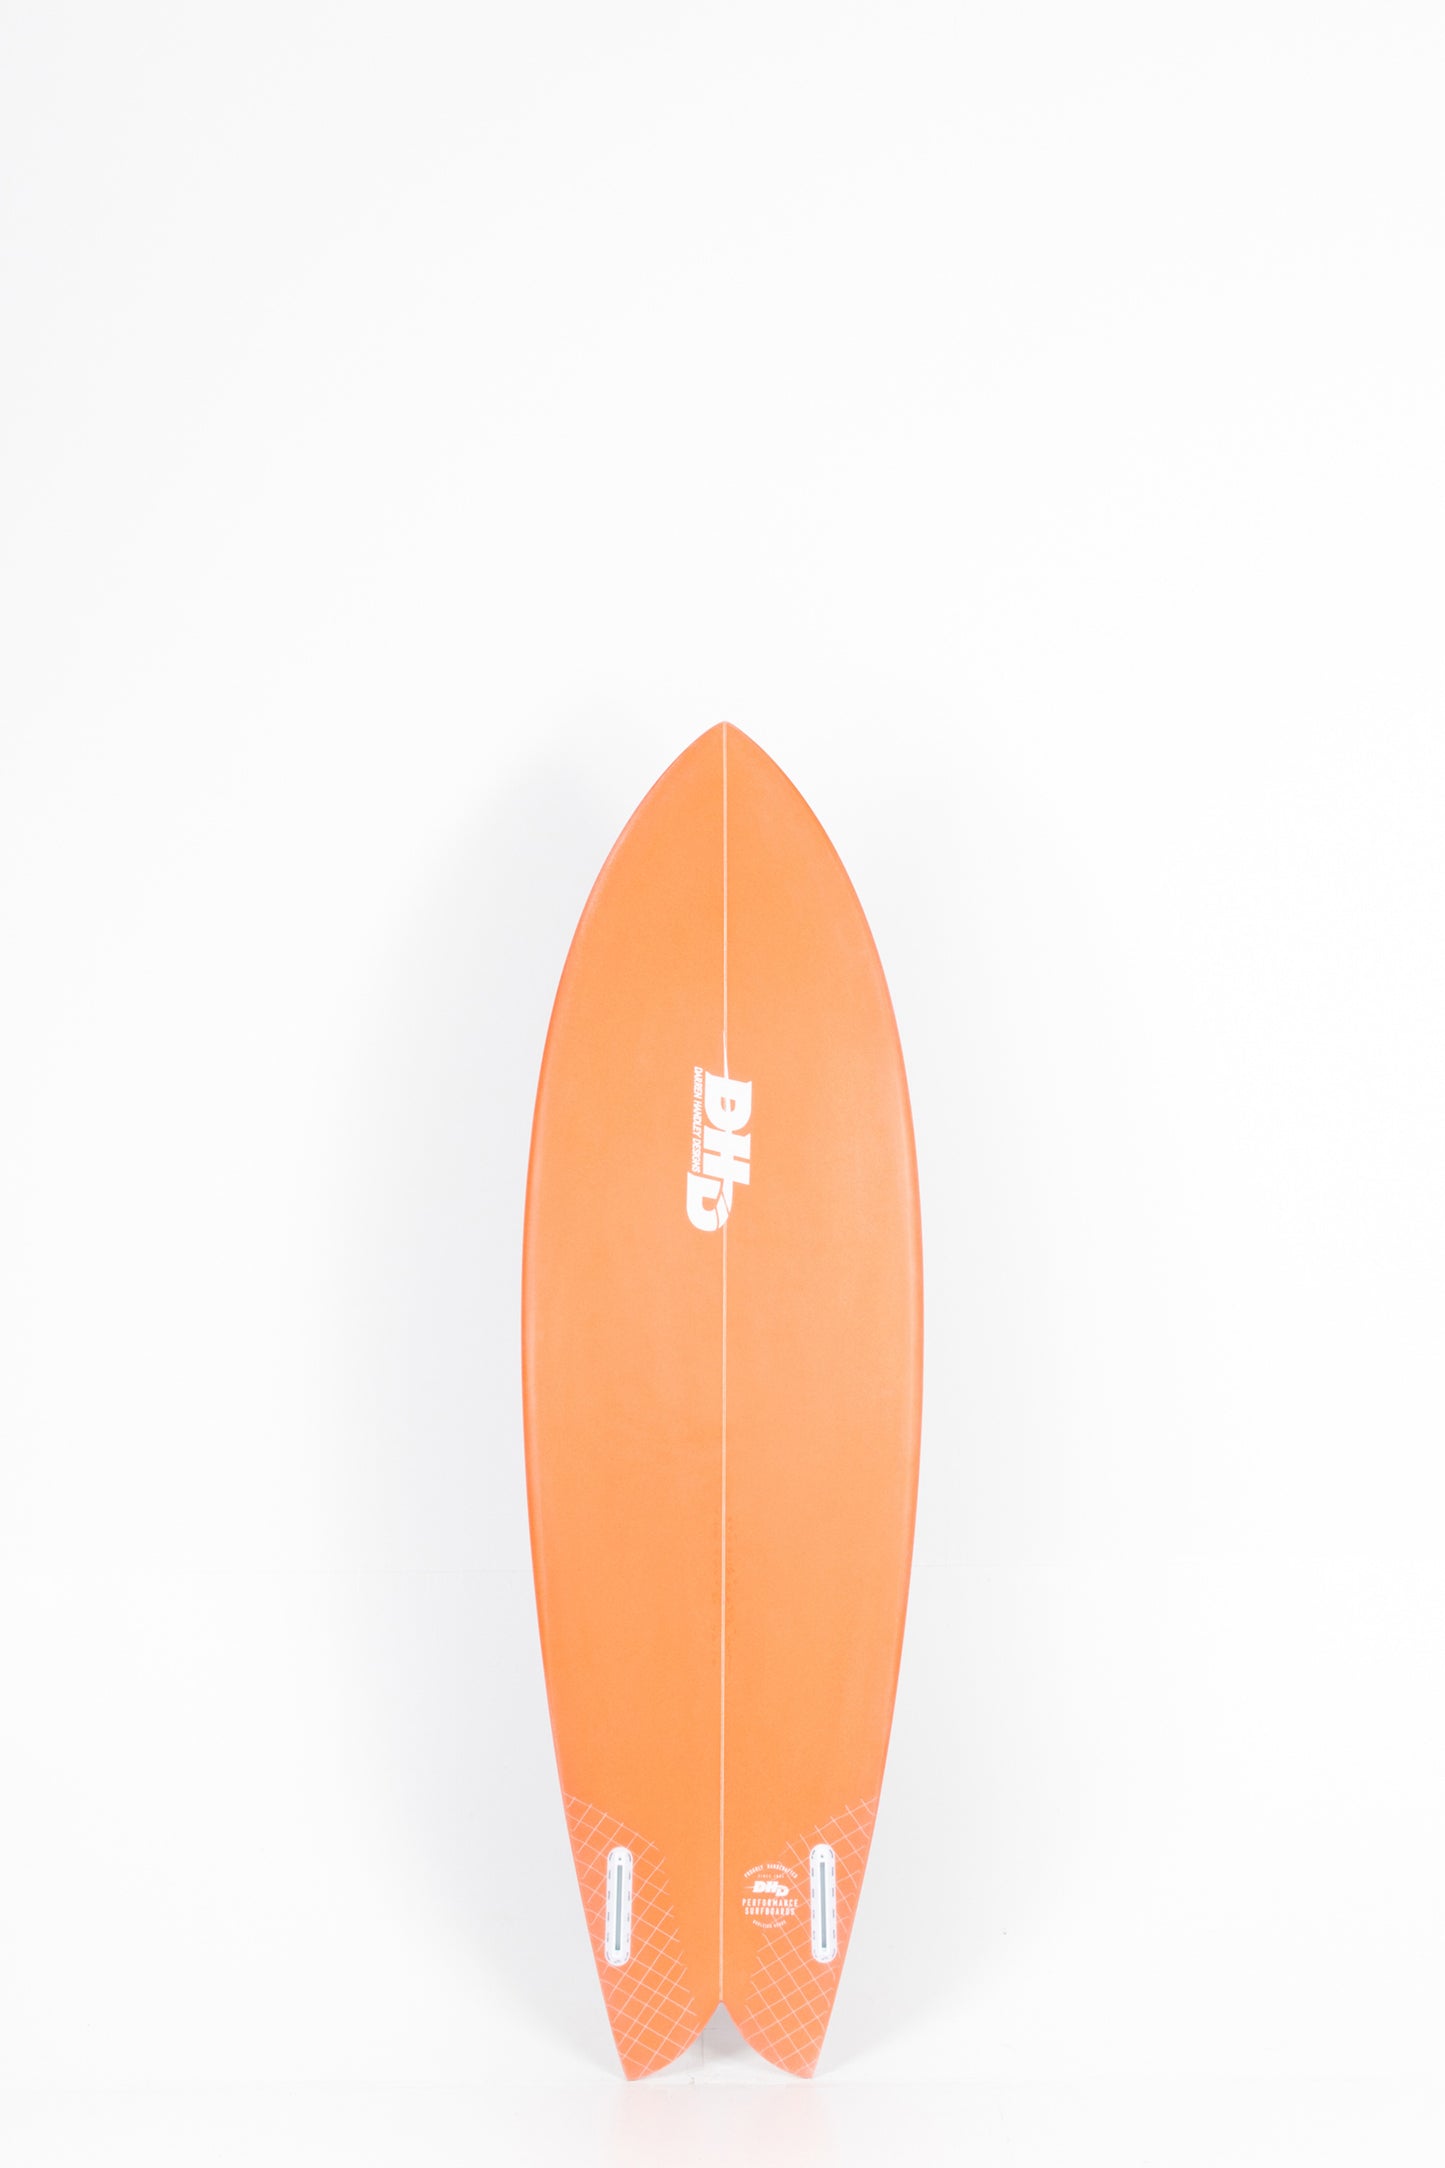 Pukas Surf Shop - DHD - MINI TWIN by Darren Handley - 5'9" x 20 1/2 x 2 3/8 x 32L.